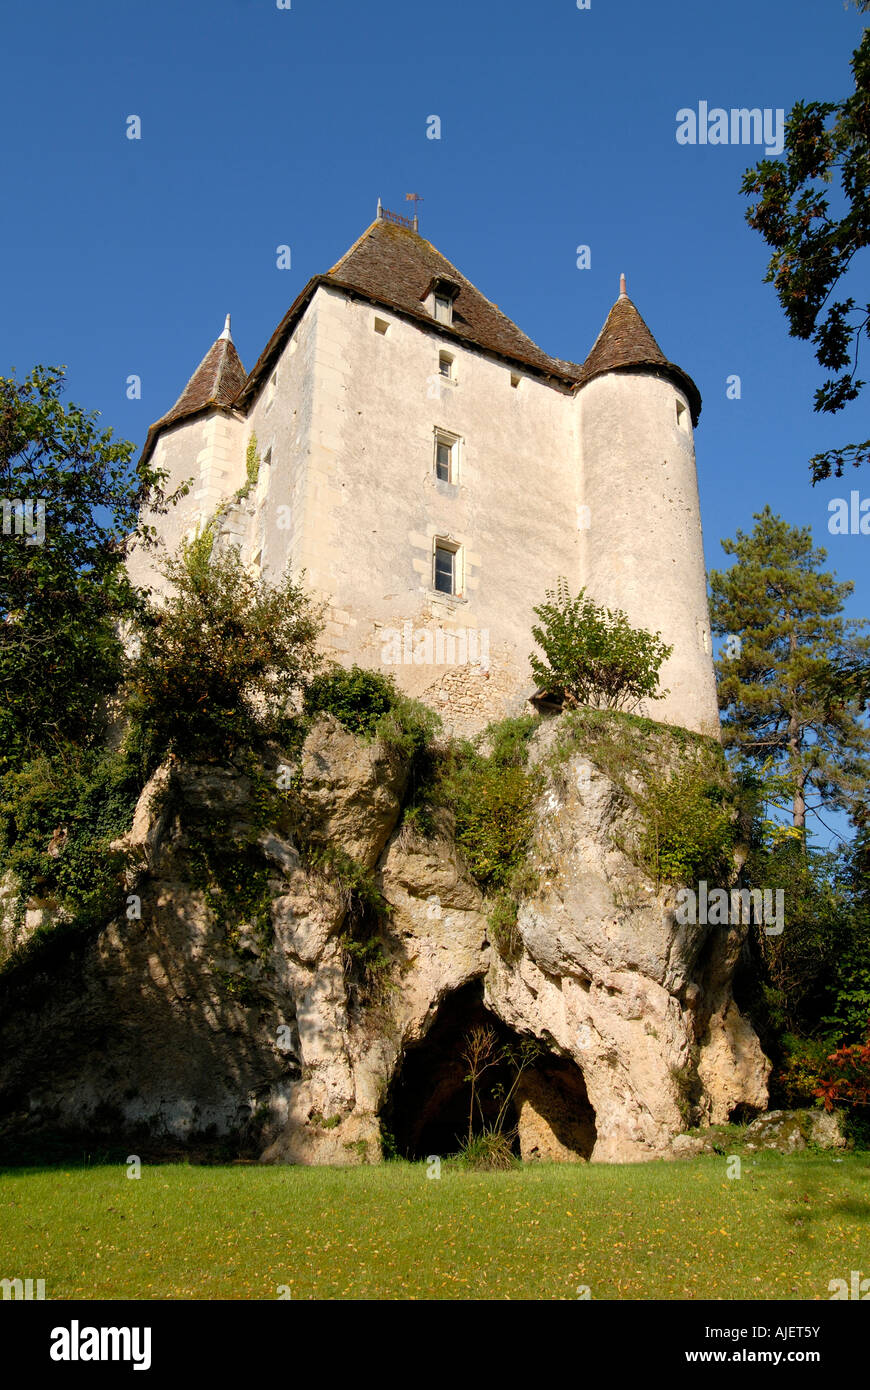 Chateau de Jutreau, Vicq sur Gartempe, Vienne, France. Stock Photo